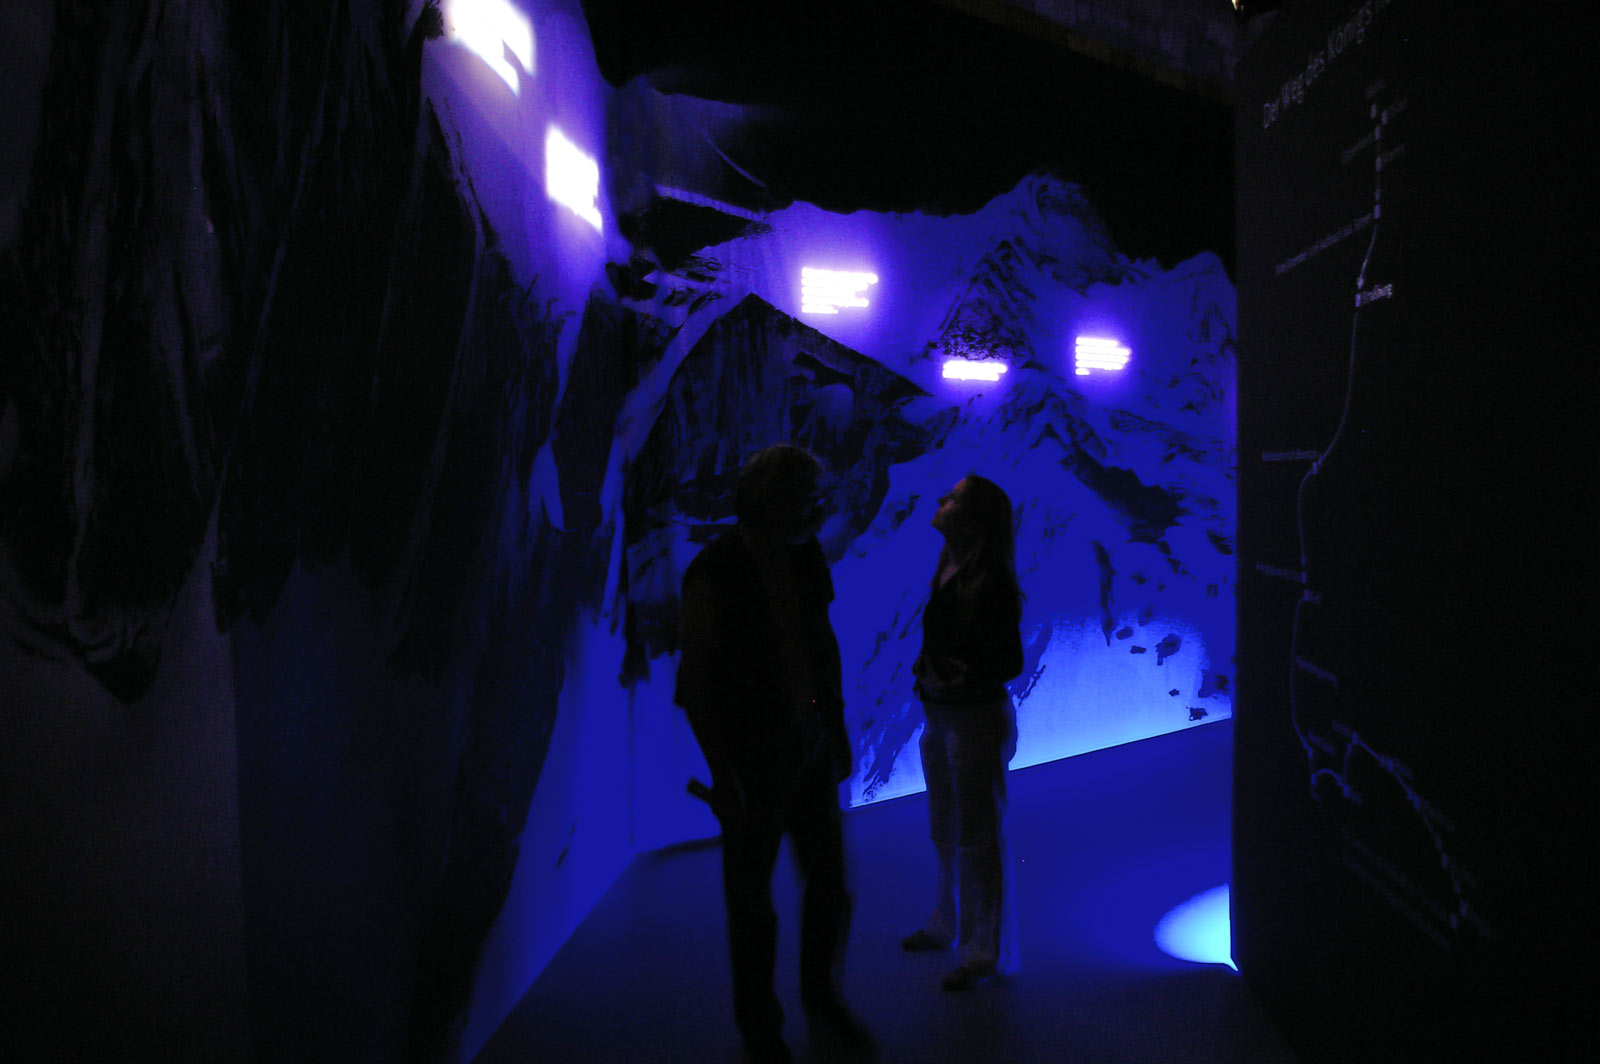 Das Referenzbild für Ausstellungsgestaltung aus der Sonderausstellung „Canossa 1077. Erschütterung der Welt“ zeigt die Szenografie einer Alpenüberquerung mit speziellem Lichtkonzept.